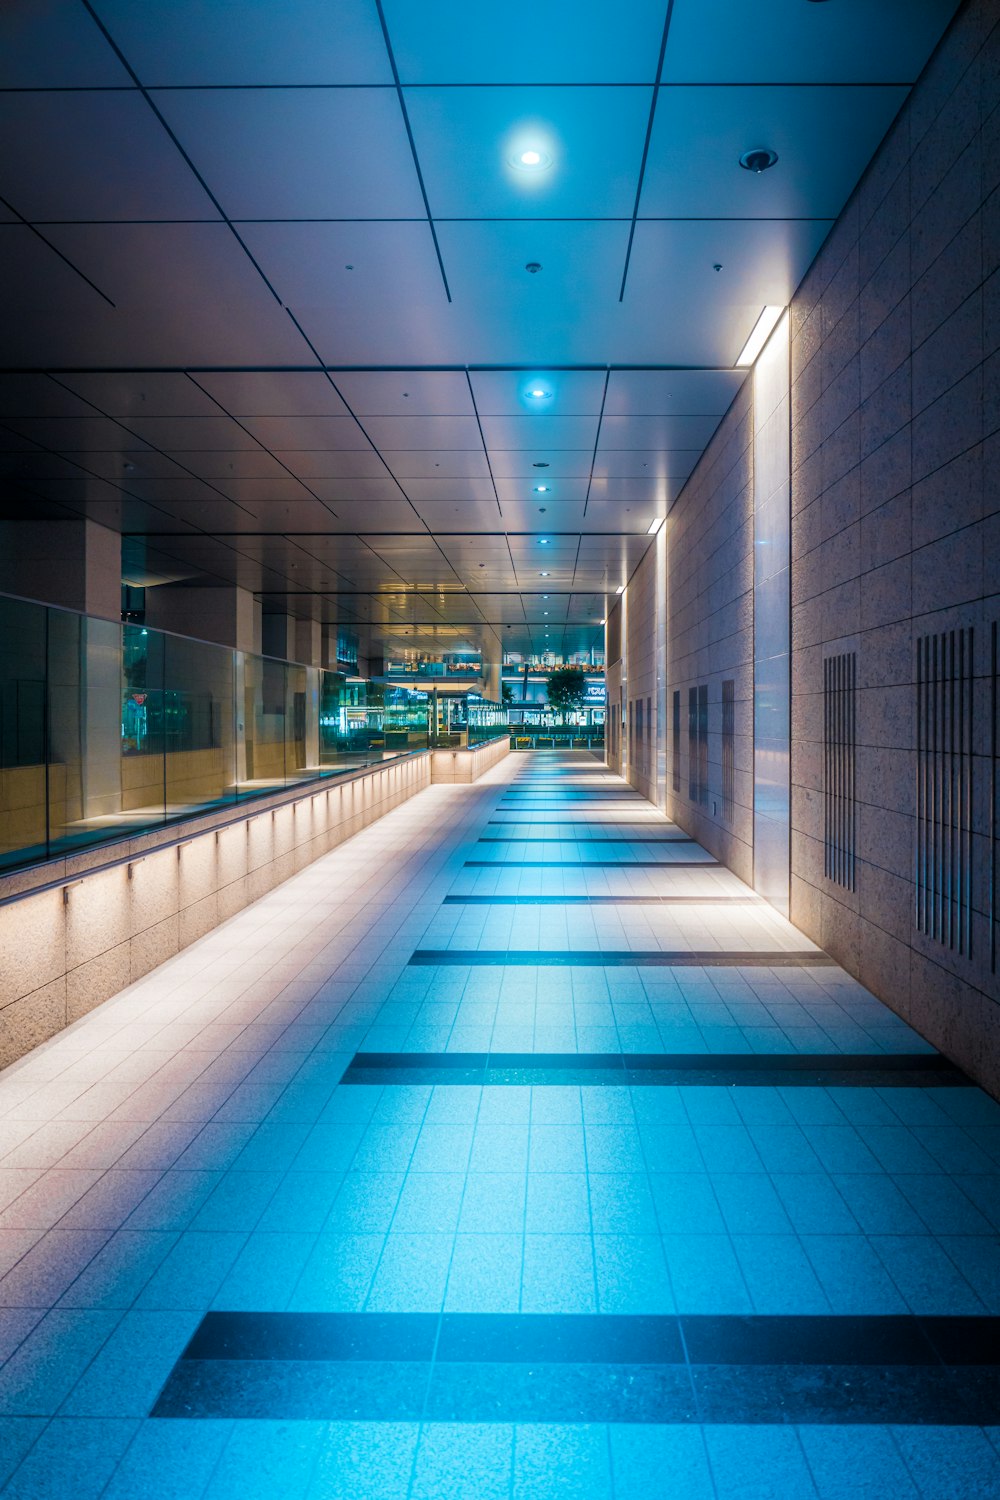 a long hallway with a tile floor